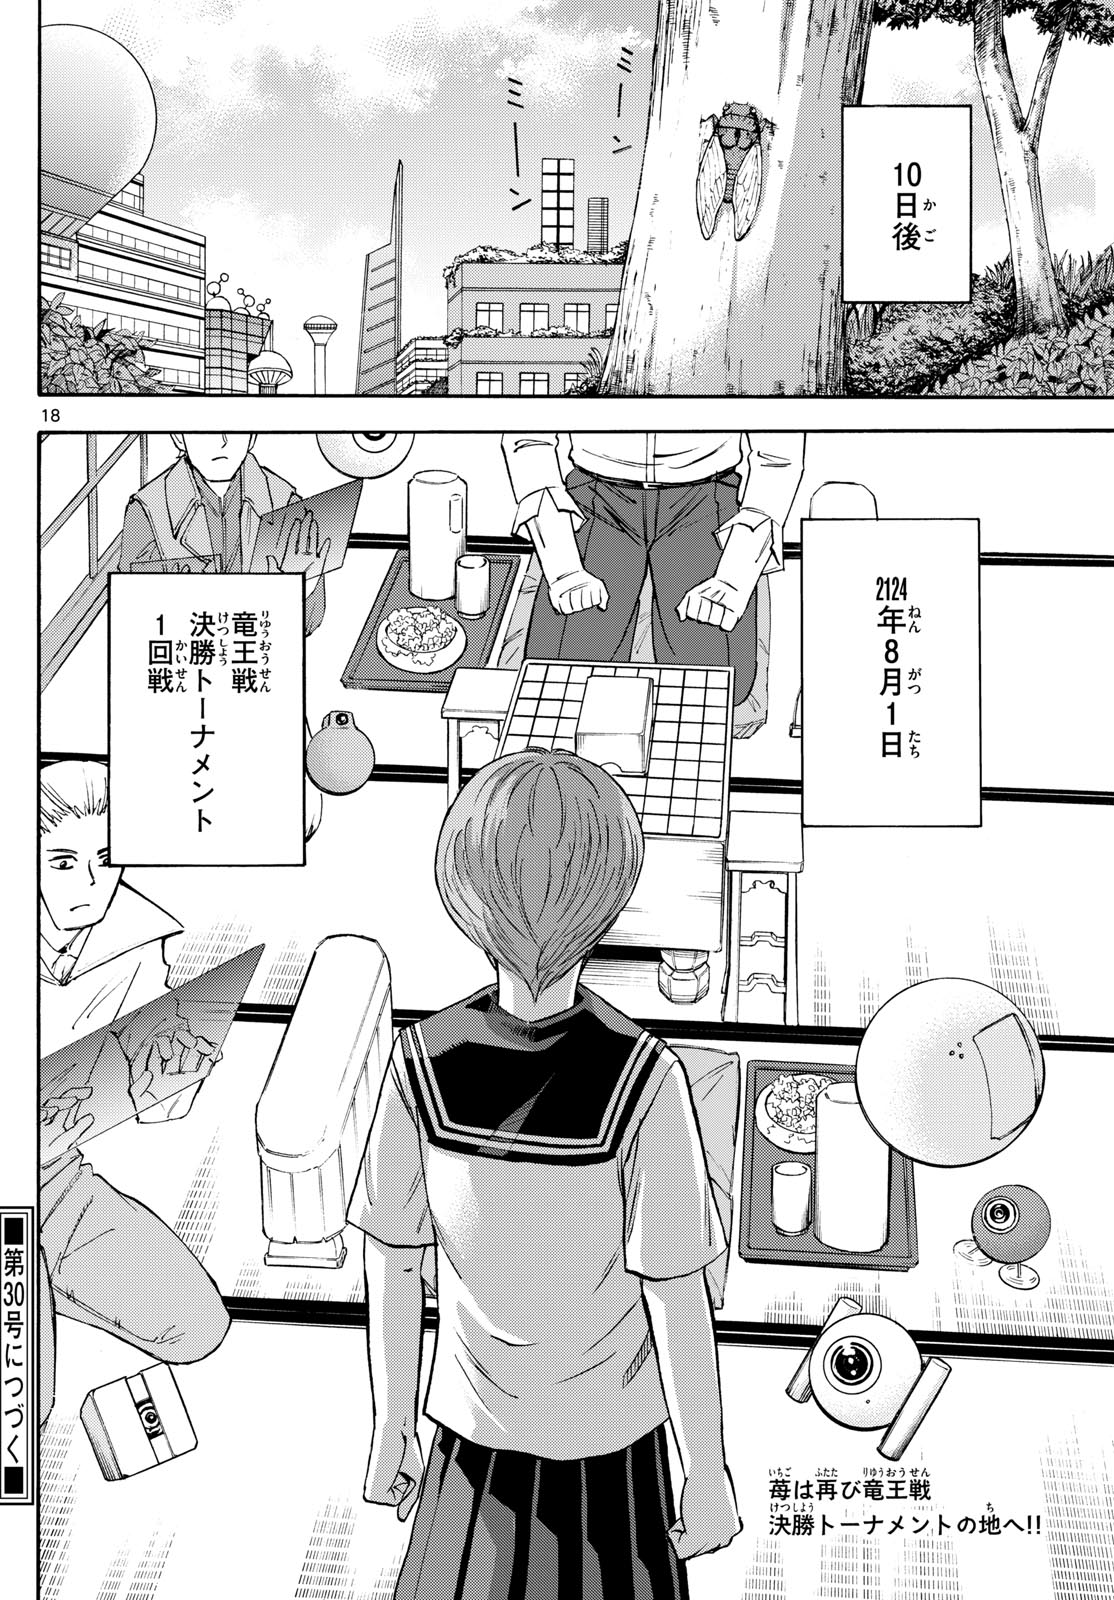 Tatsu to Ichigo - Chapter 195 - Page 18